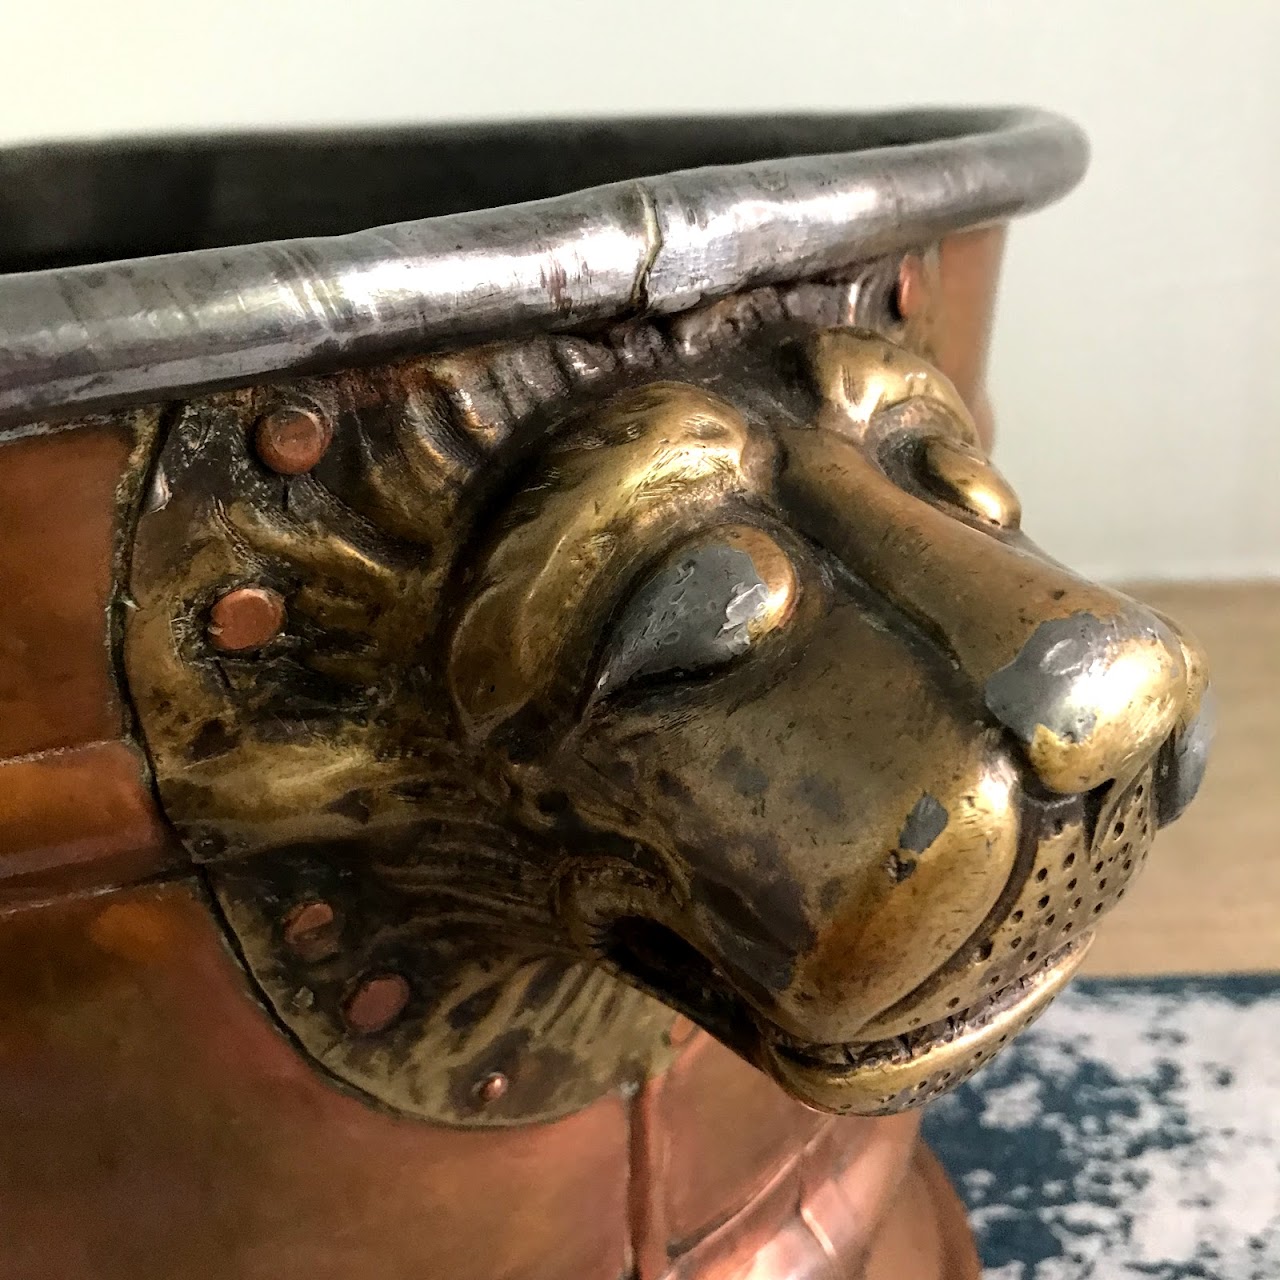 Copper & Brass Lion's Head Oval Jardiniere